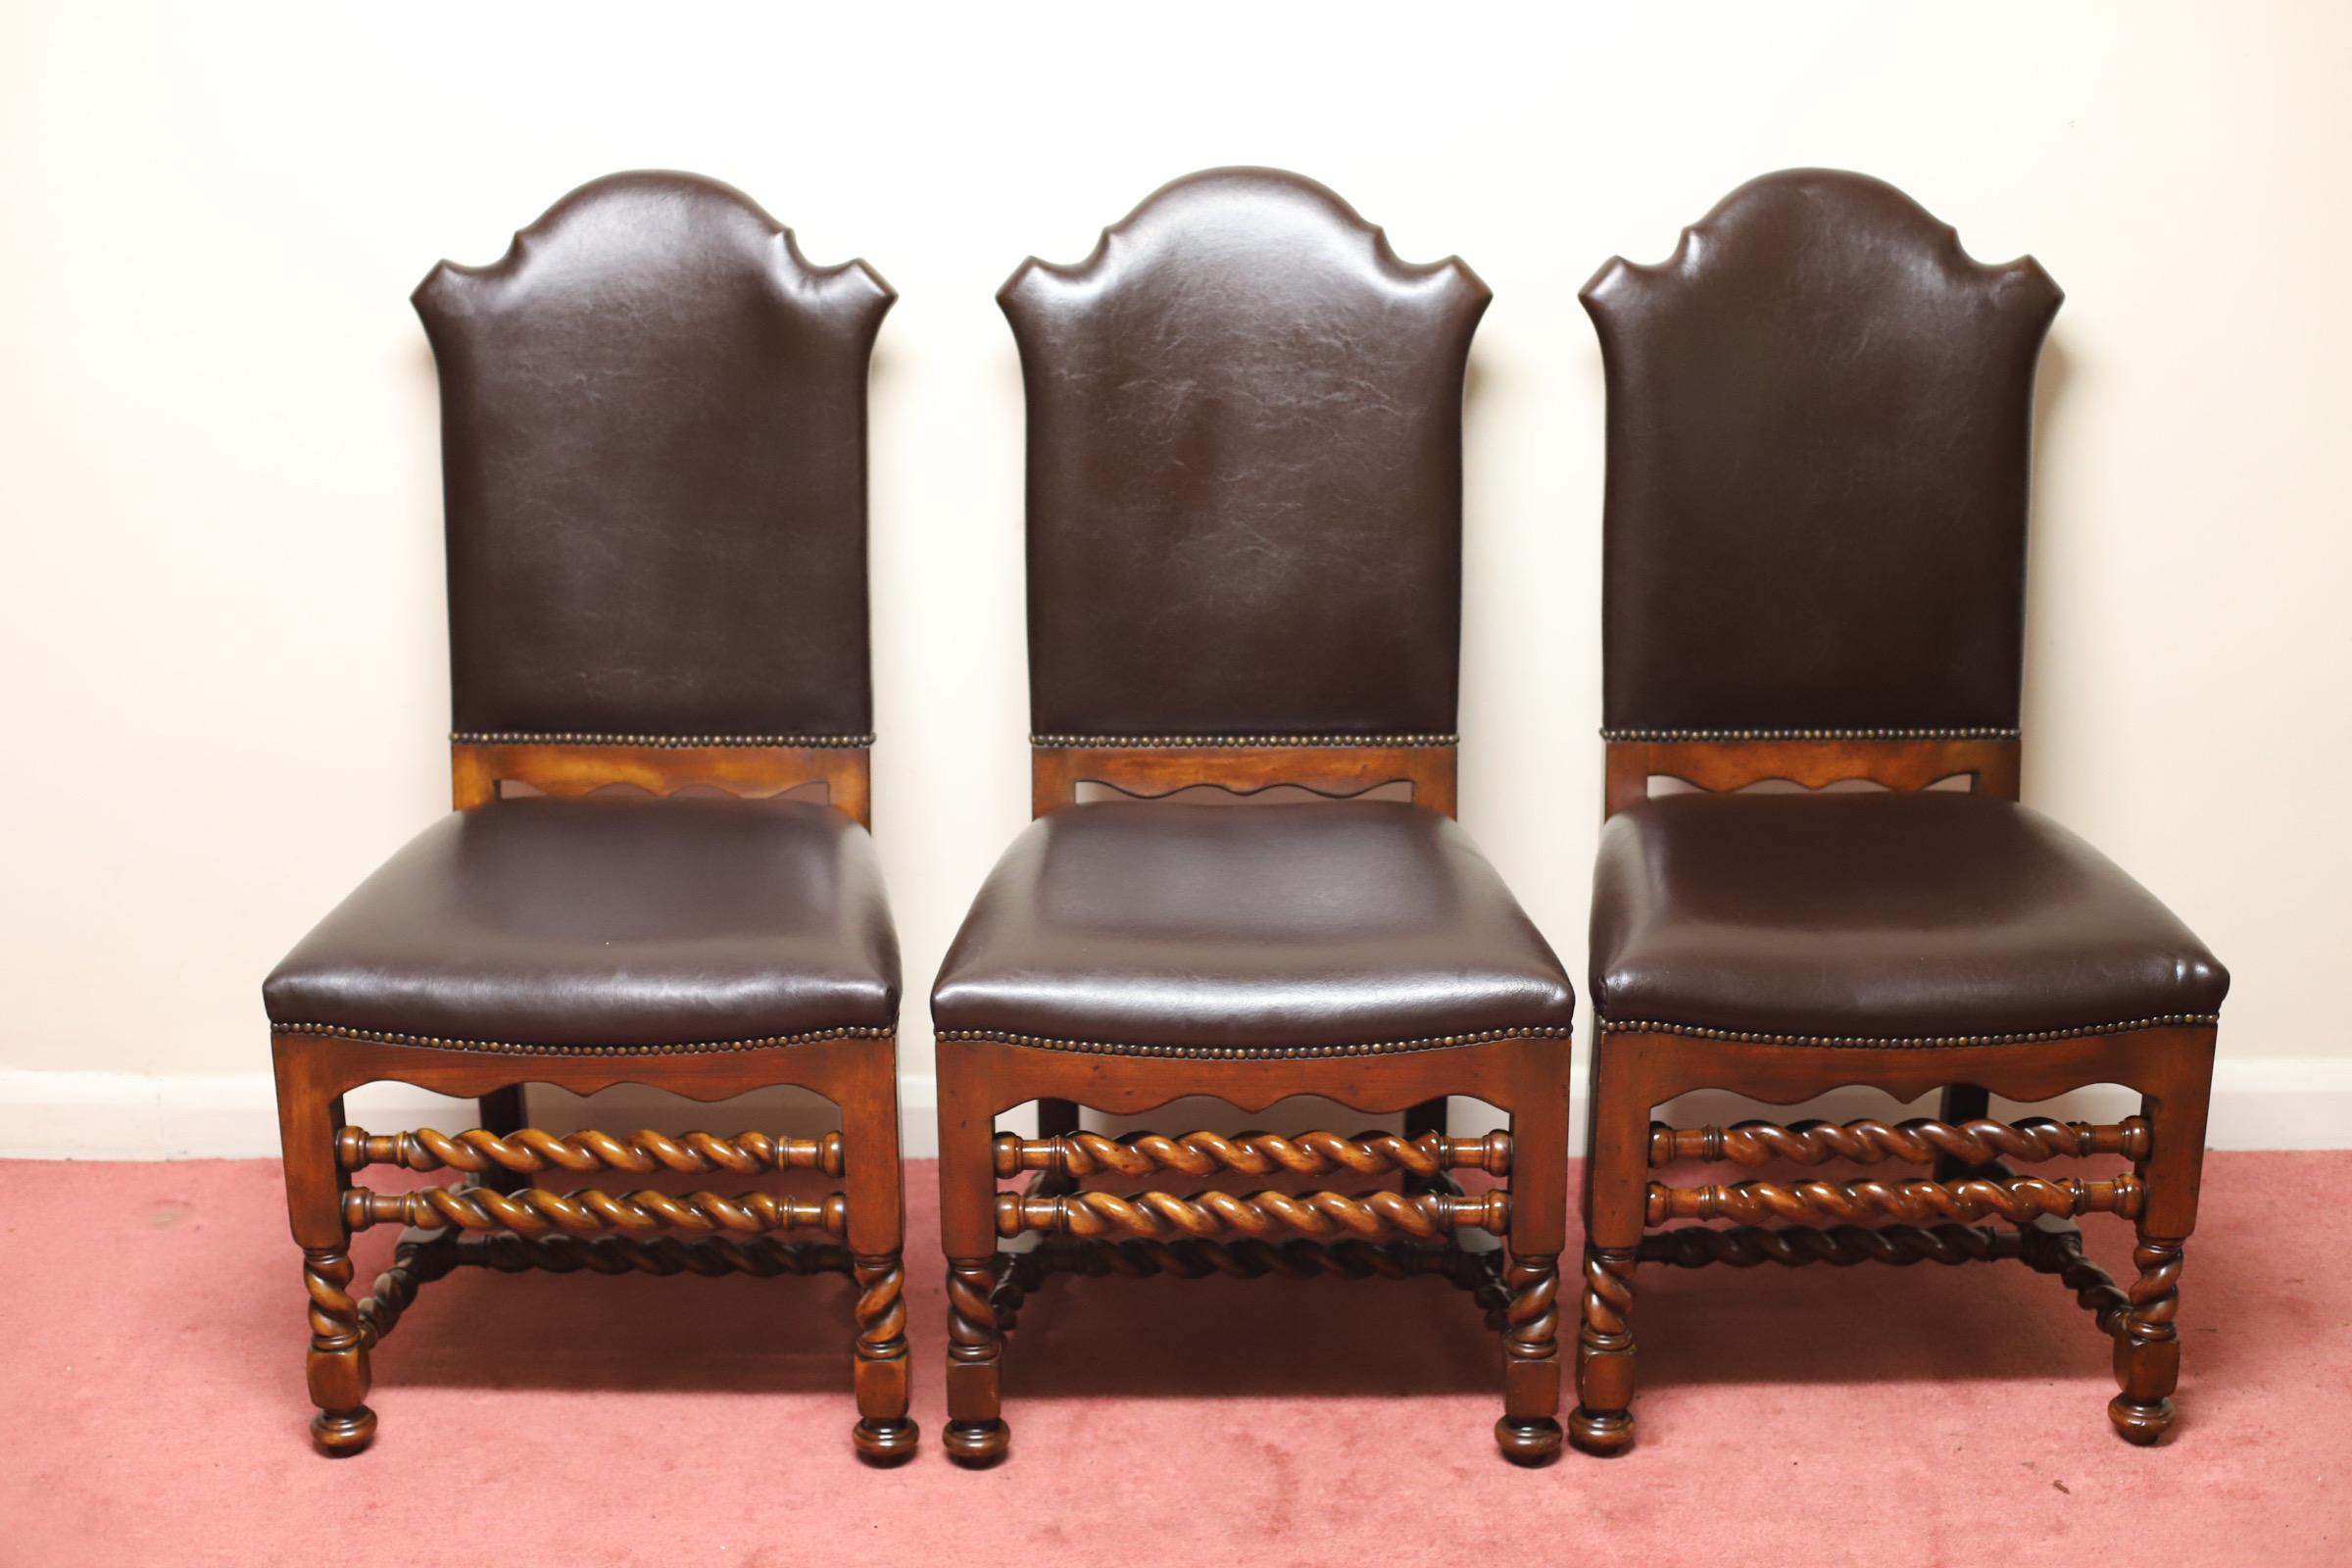 Bel ensemble de 6 chaises de salle à manger modernes en châtaignier tournées en spirale par Theodore Alexander.
Les sièges et les dossiers sont recouverts de cuir marron souple - avec des étiquettes de sécurité ignifuges attachées sous la base